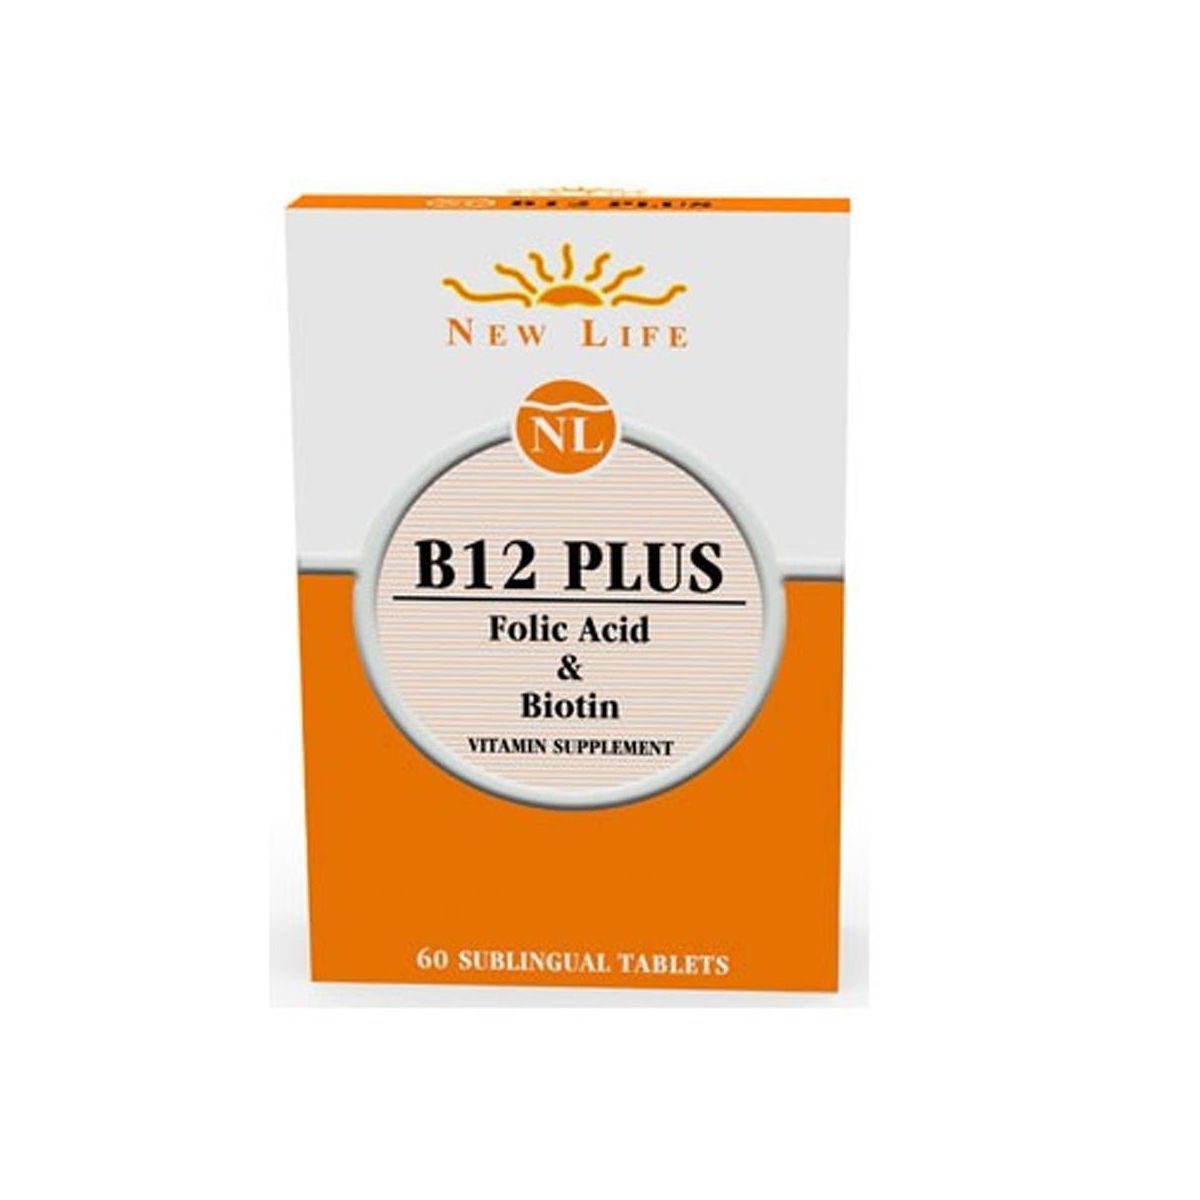 B 12sir b 12siq. New Life b12 Plus. Osende b12. B12 Plus Methylcobalamin folic acid & Biotin. B12 folic asit Satin al.